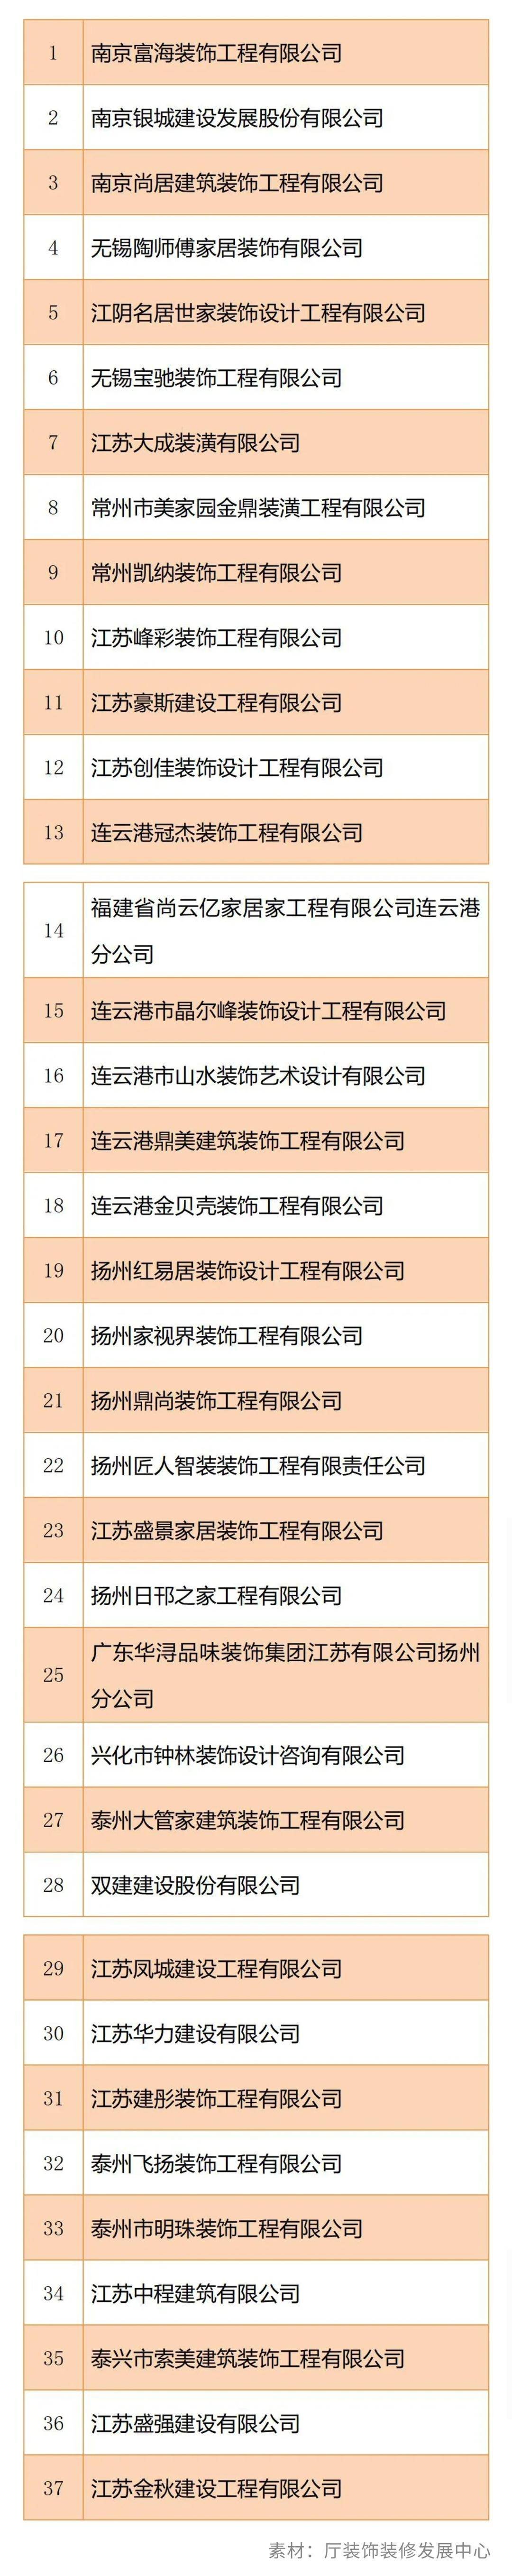 江苏公布2020年度“江苏省住宅装修放心消费”示范企业名单